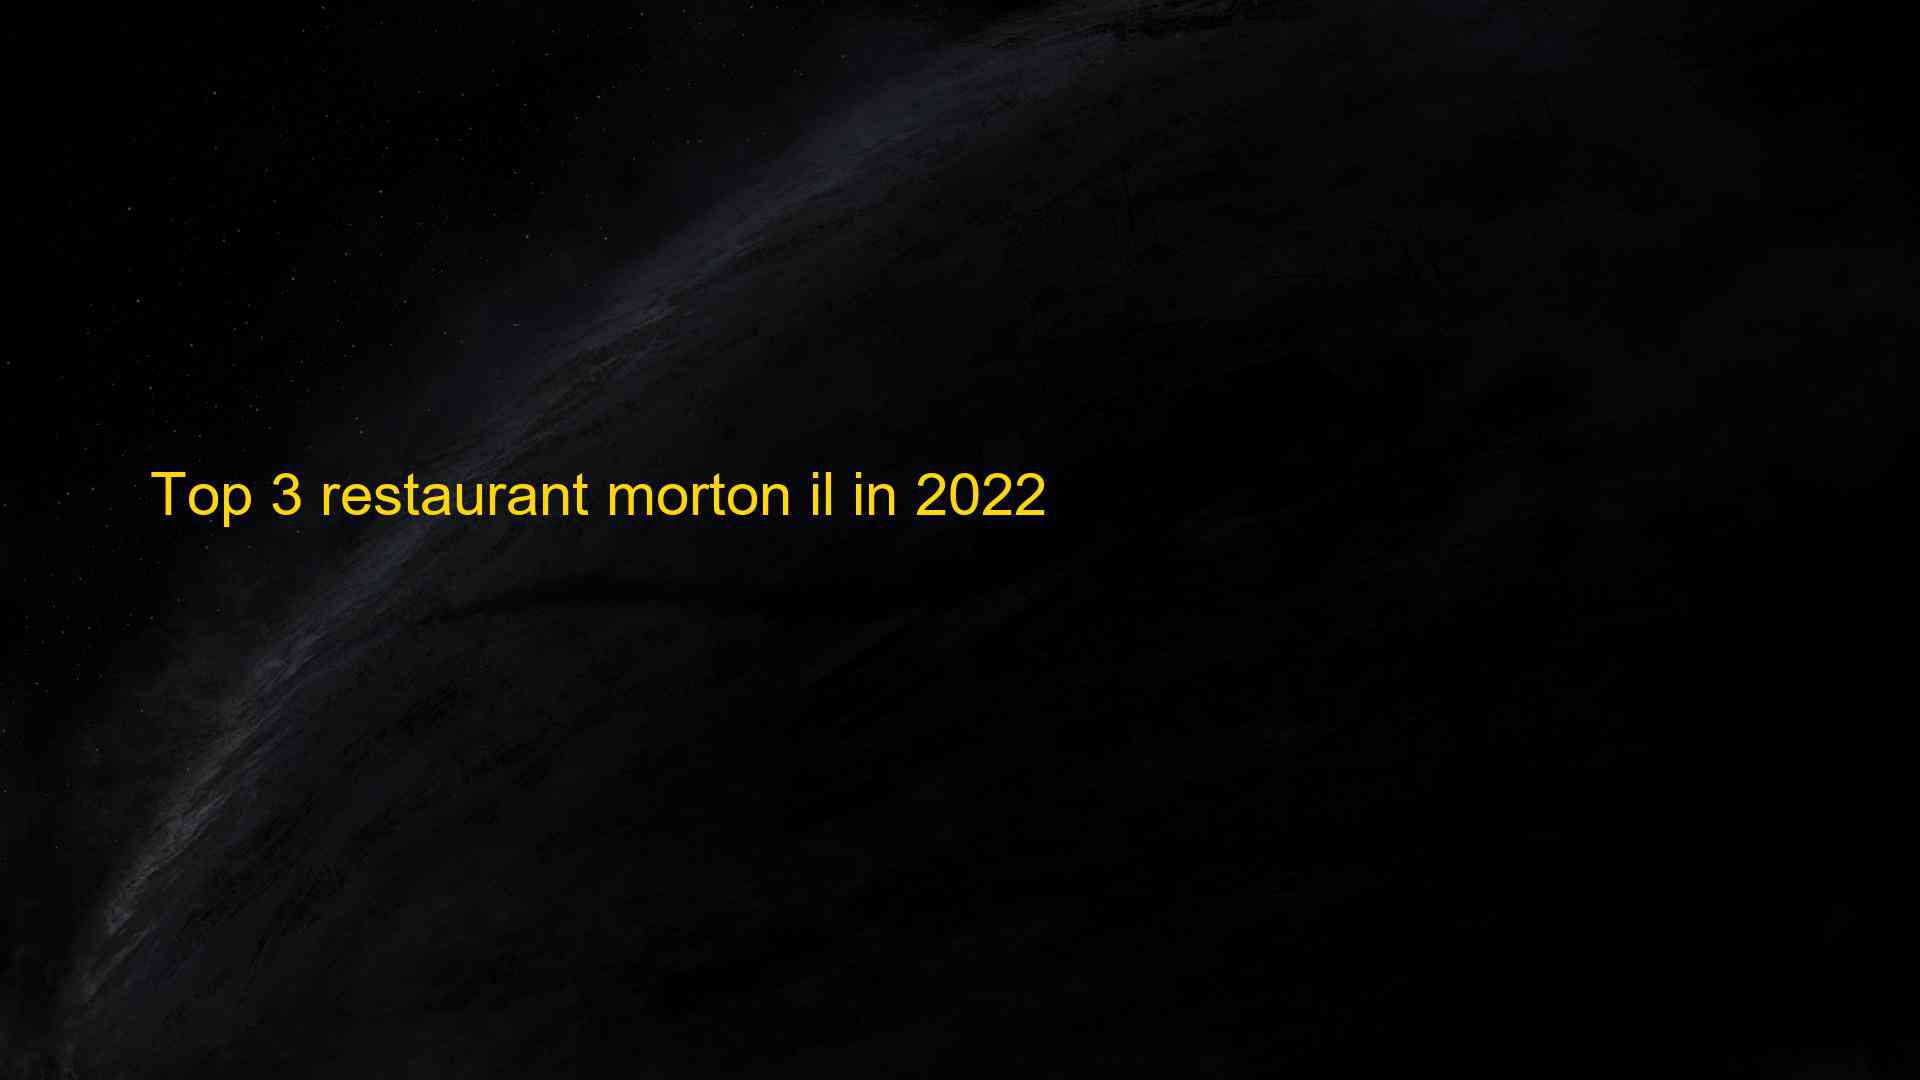 Top 3 restaurant morton il in 2022 1663532395